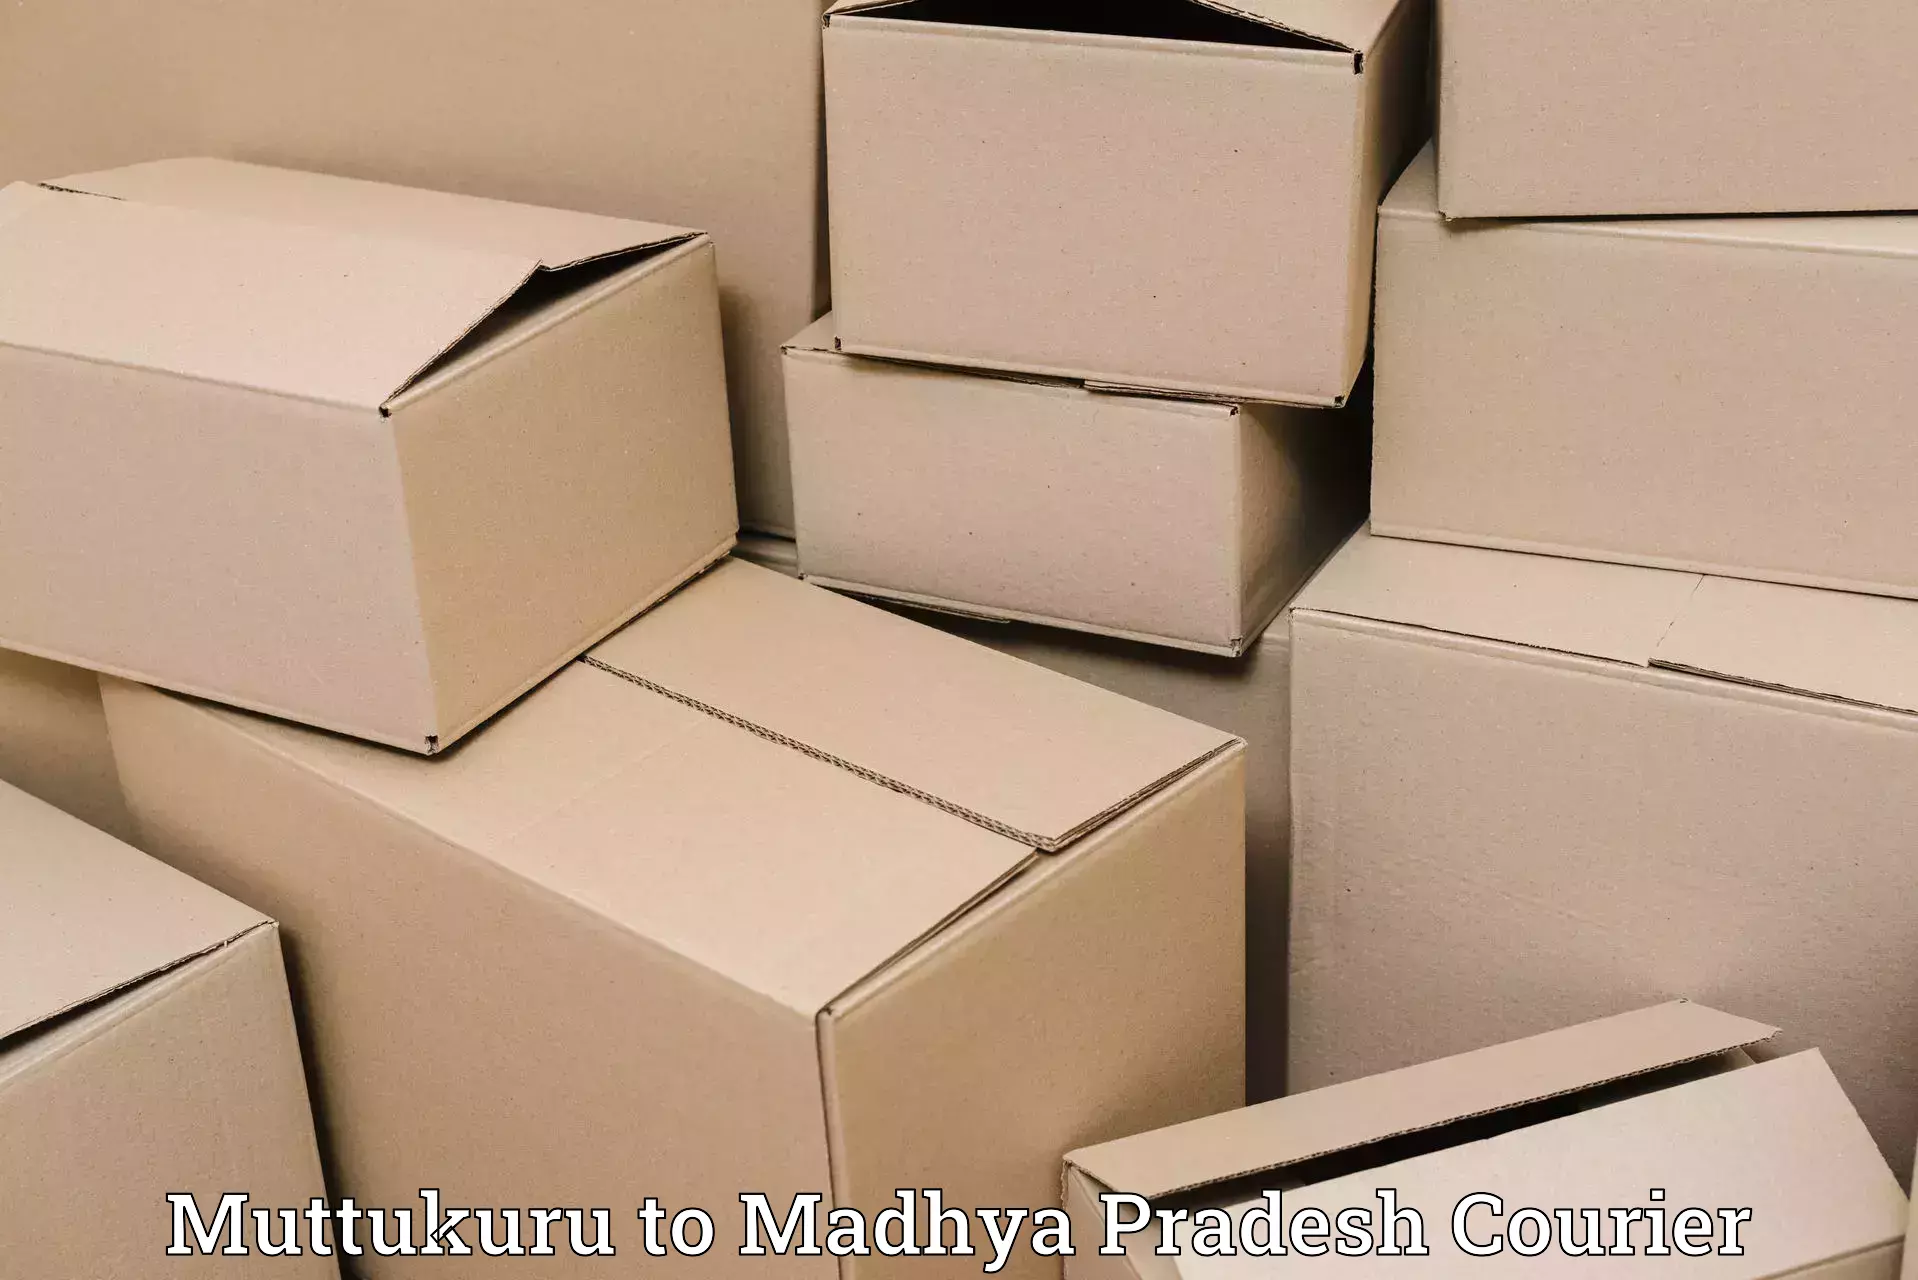 Expedited shipping solutions Muttukuru to Satna